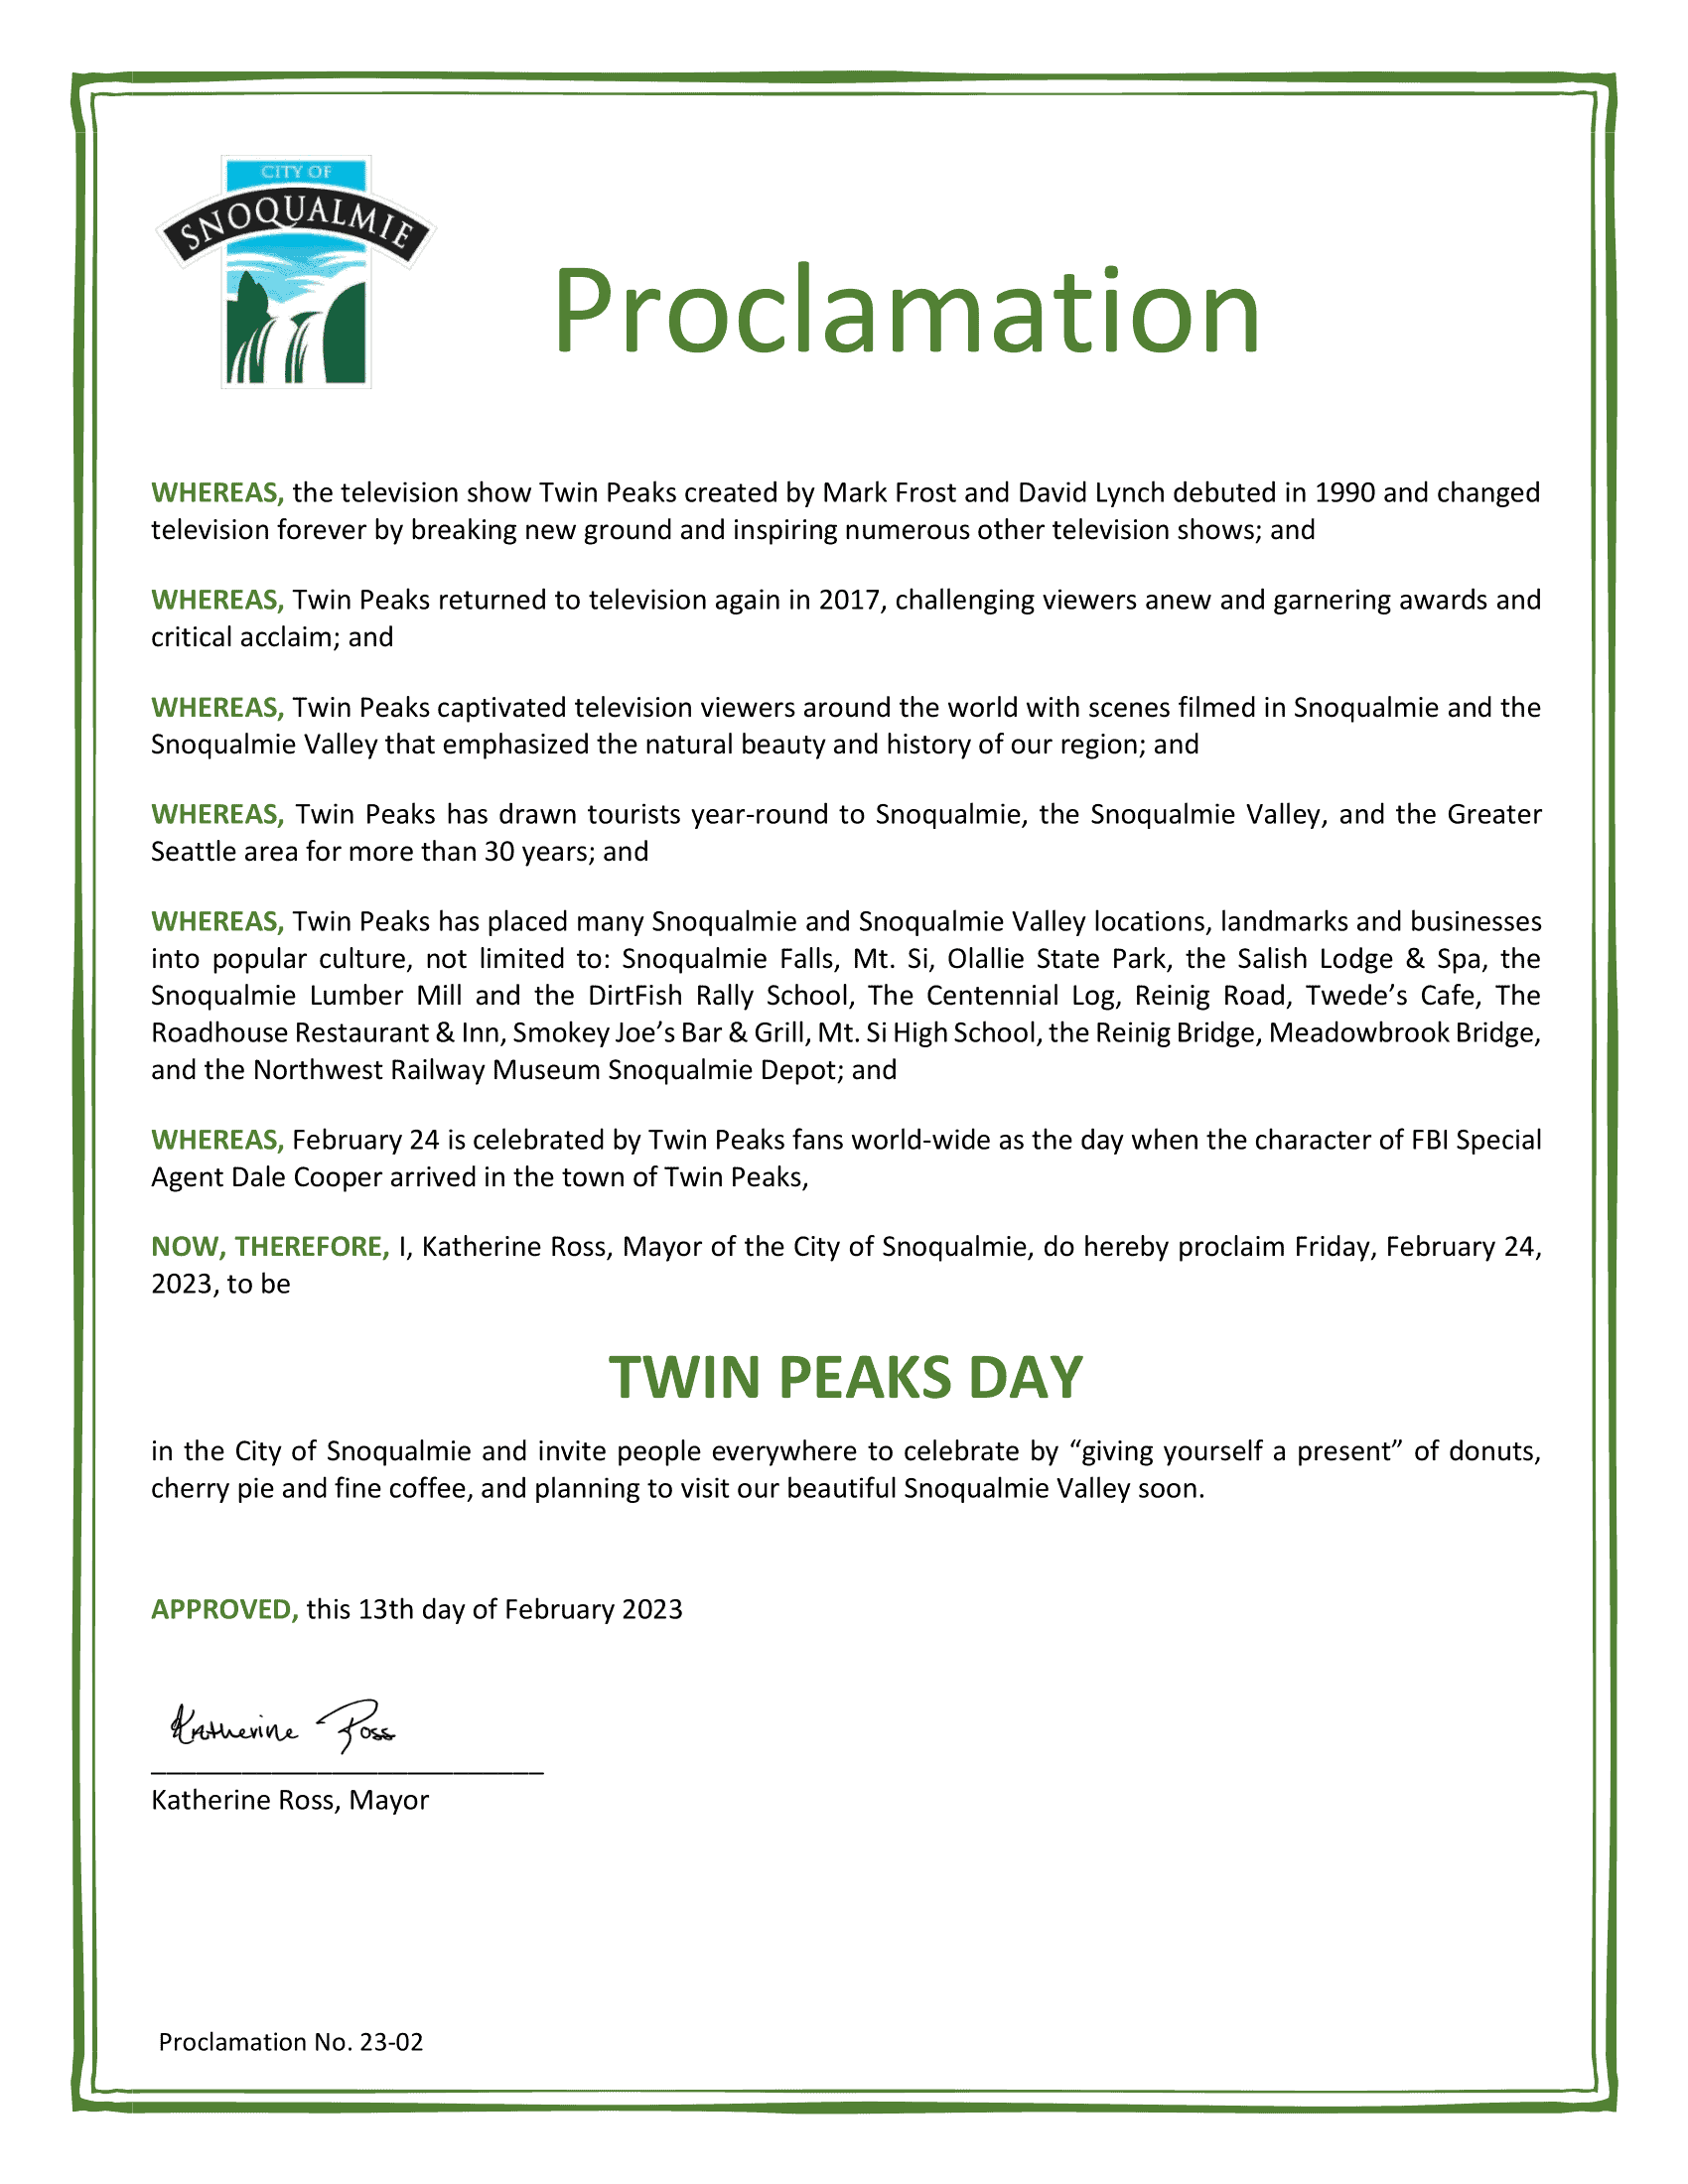 Happy Twin Peaks Day 2023